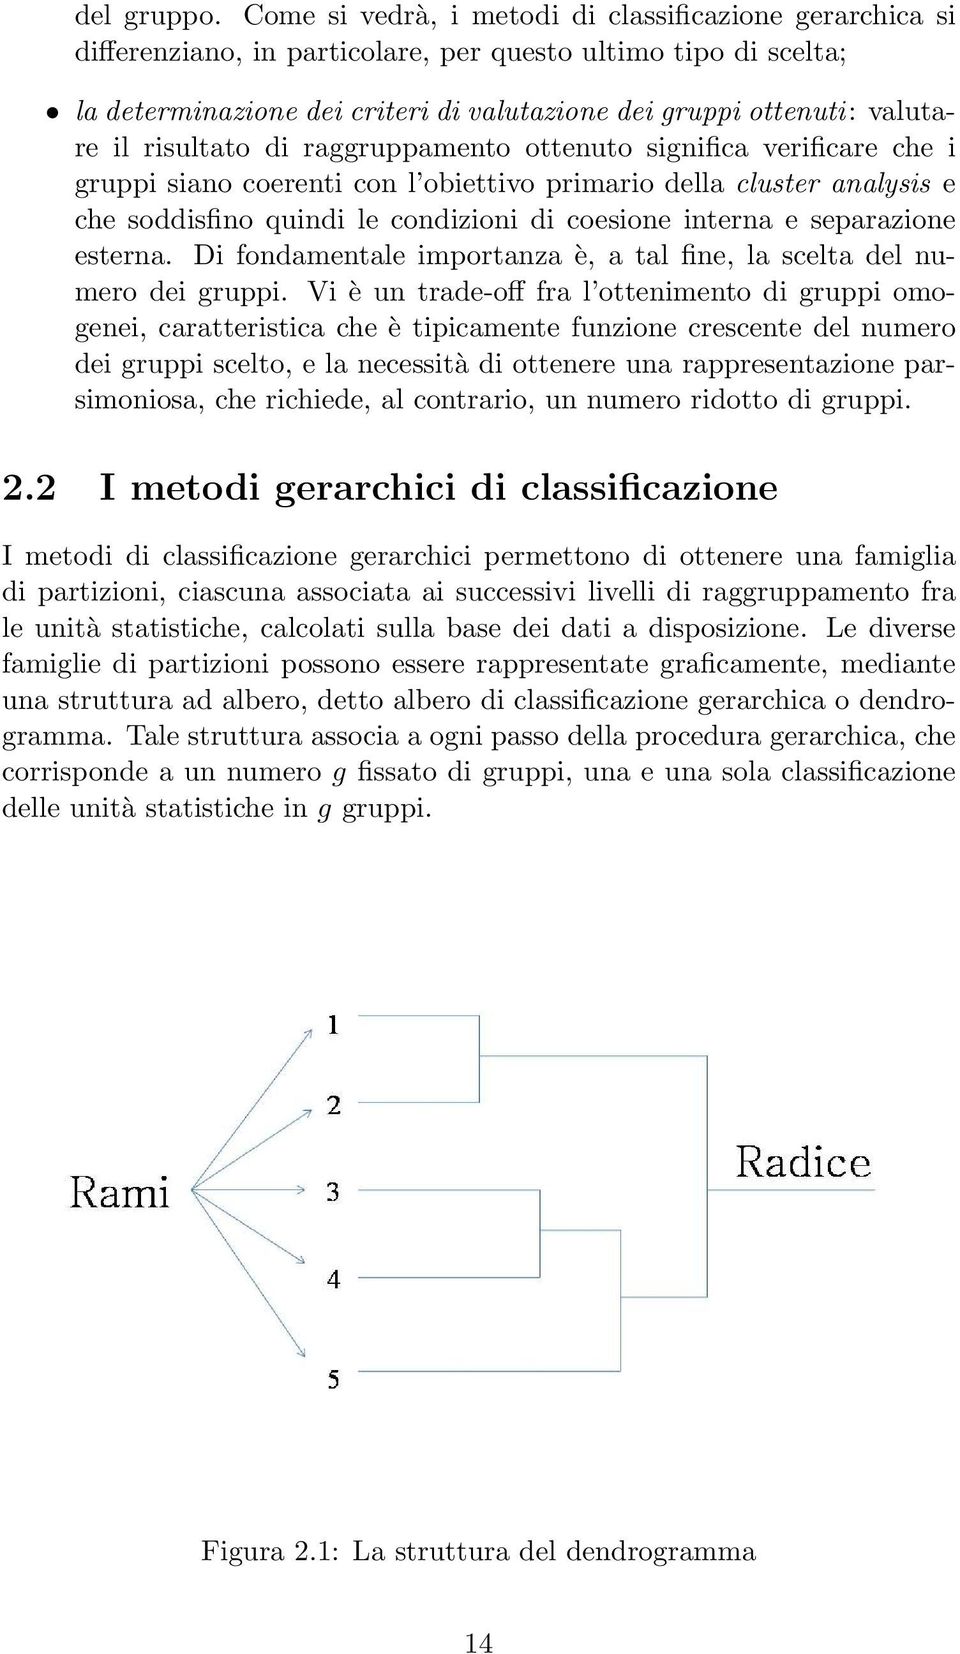 risultato di raggruppamento ottenuto significa verificare che i gruppi siano coerenti con l obiettivo primario della cluster analysis e che soddisfino quindi le condizioni di coesione interna e